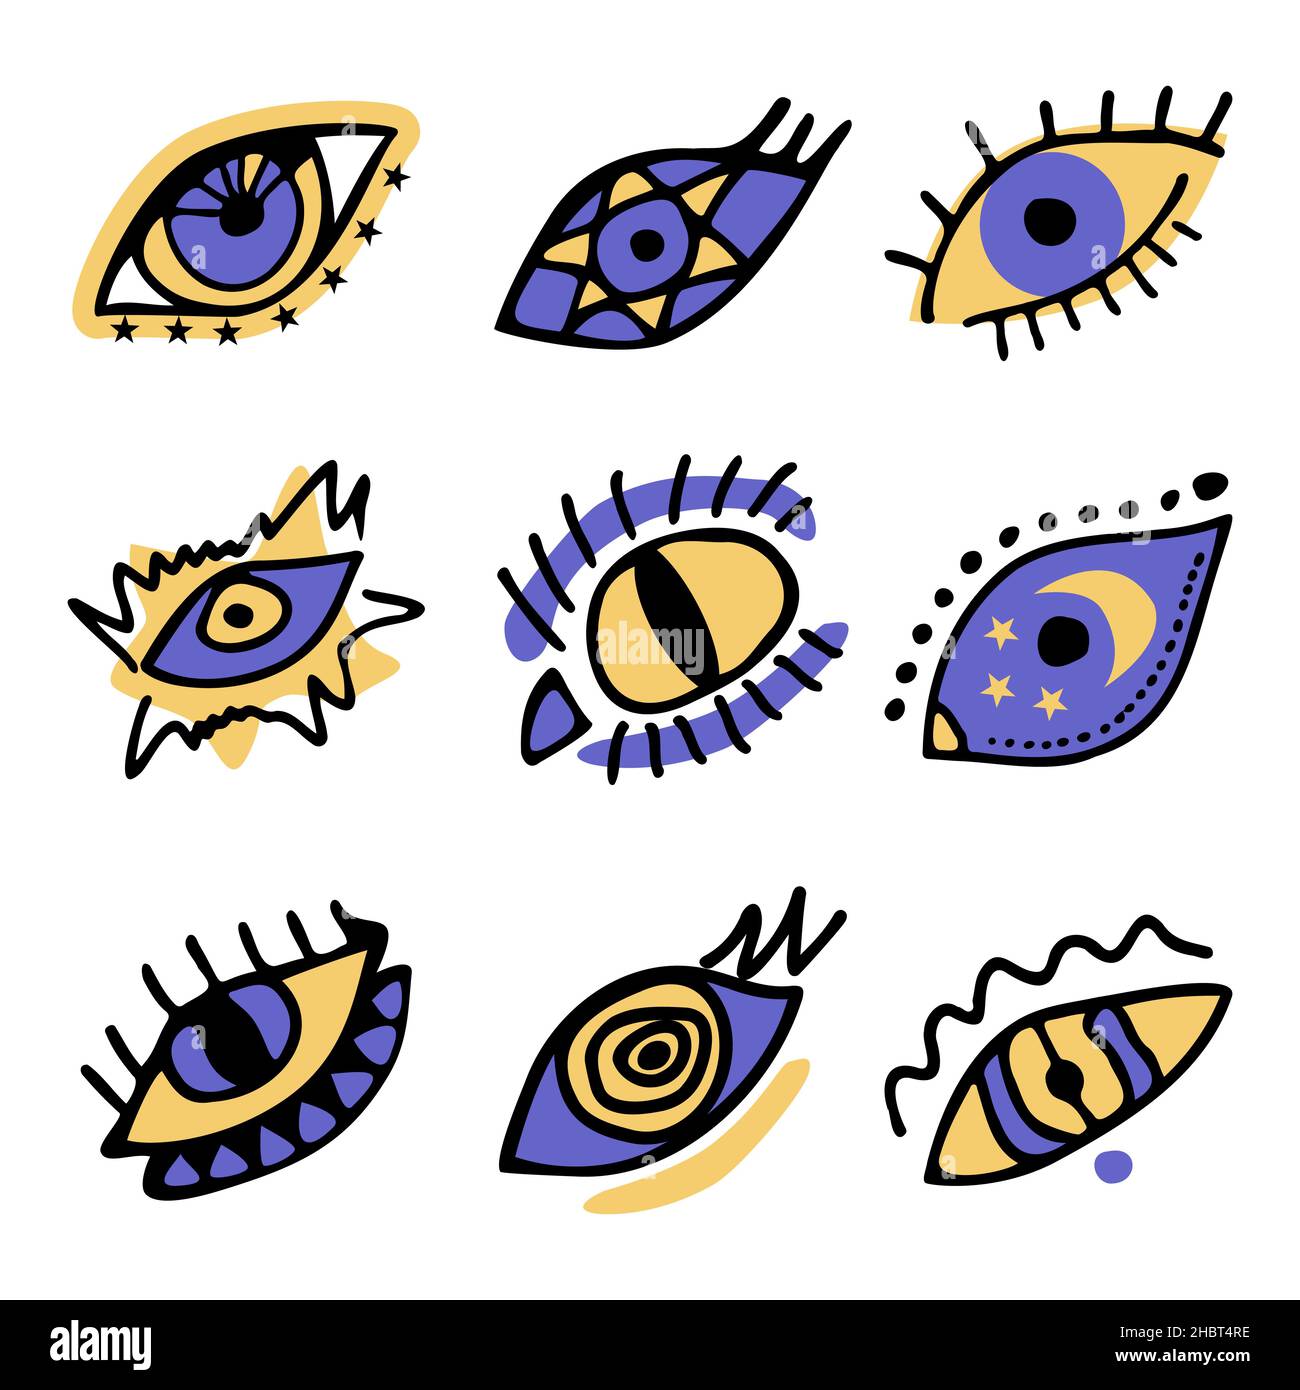 Set von Farbe boho Hand gezeichnet Magie böse Doodle Augen. Sammlung von esoterischen Auge verschiedenen Formen, Katzenauge, Spirale, Sterne, Mondelemente Vektor-Illustration Stock Vektor